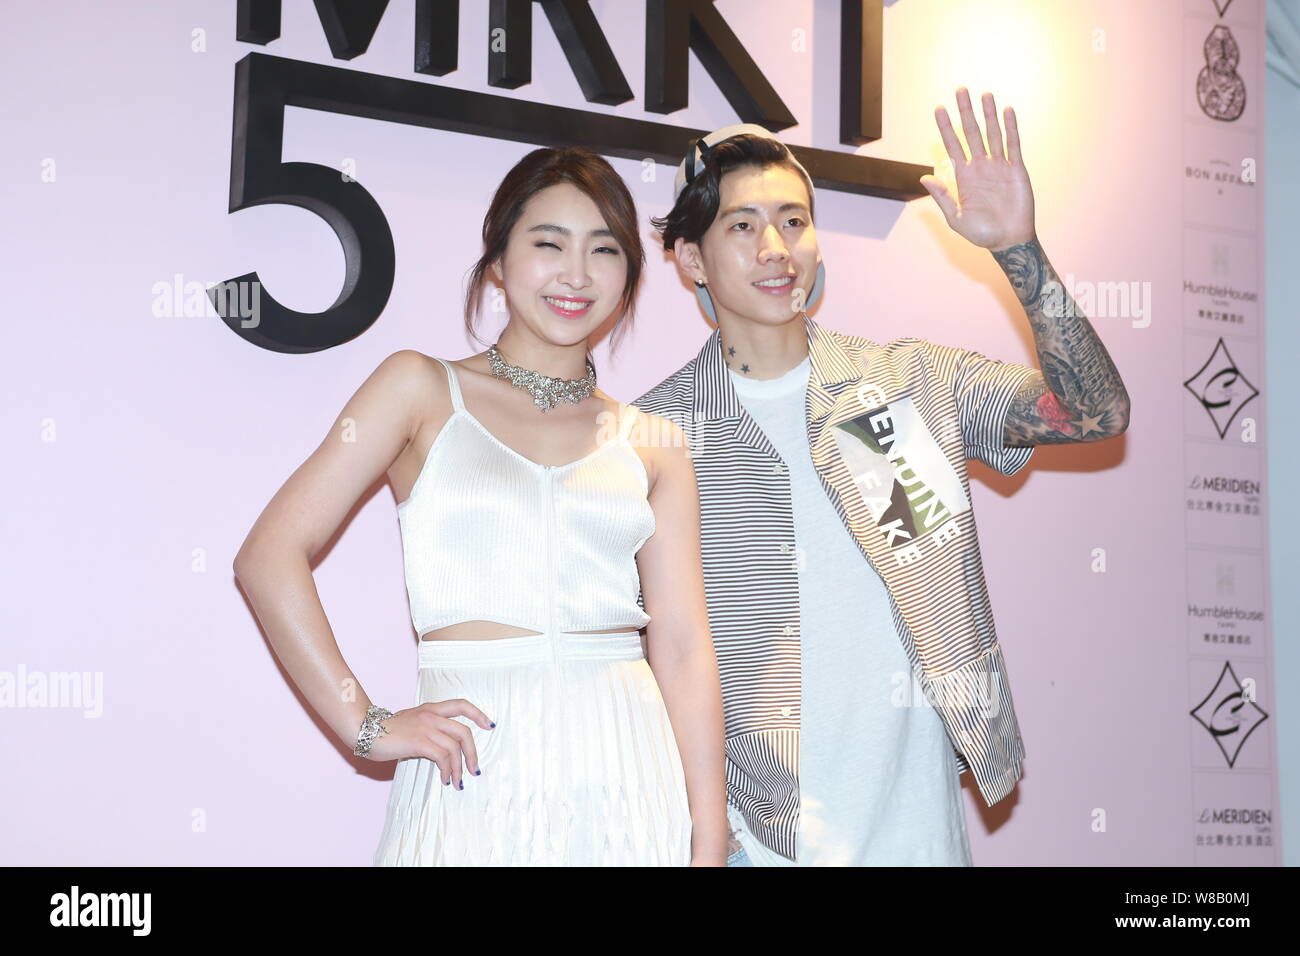 Minzy, gauche, ancien membre du groupe sud-coréen 2NE1, et l'artiste Américain Jay Park posent à la cérémonie d'ouverture de leur nouveau concept store PARK Banque D'Images